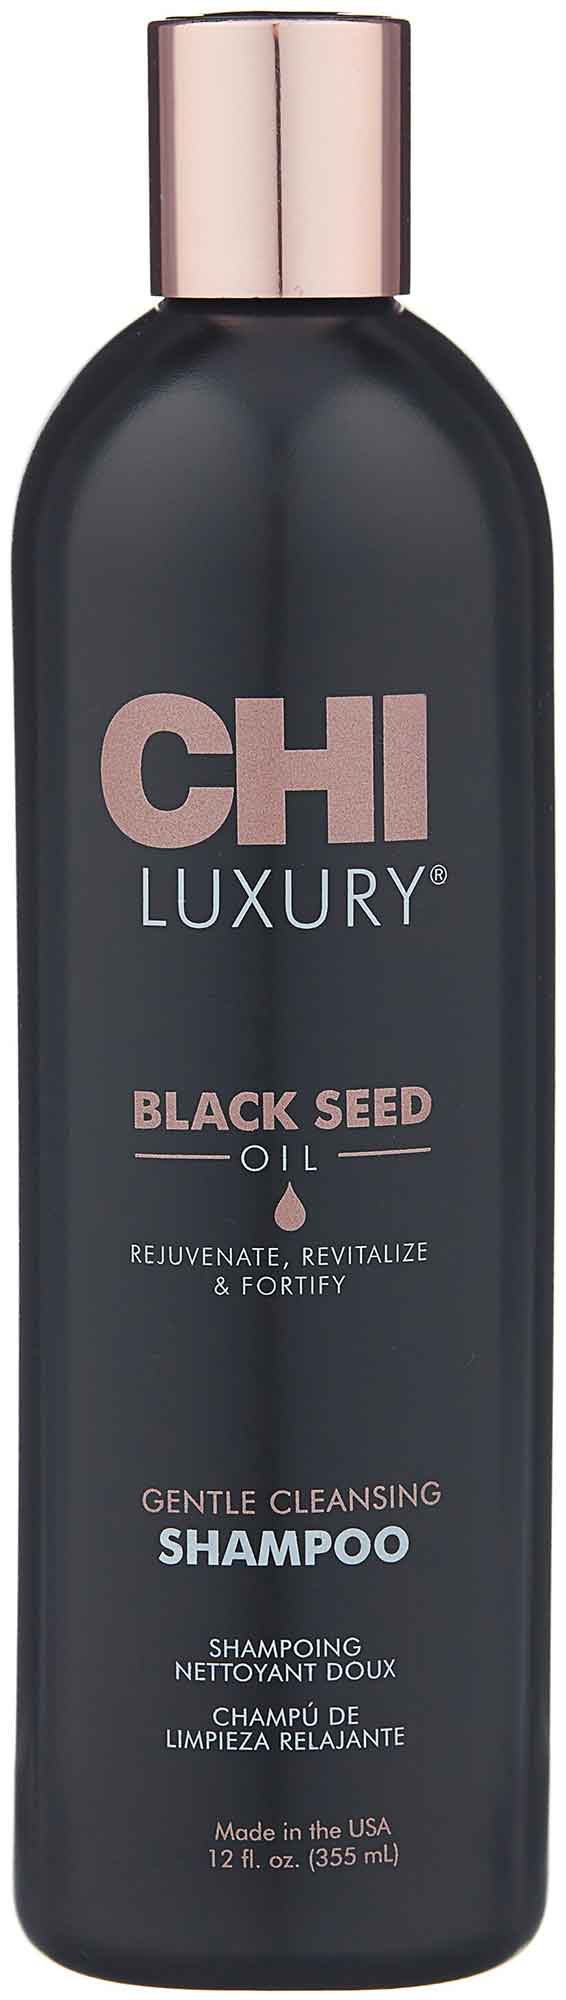 Шампунь CHI Luxury с маслом семян черного тмина для мягкого очищения волос, 355 мл, CHILS12